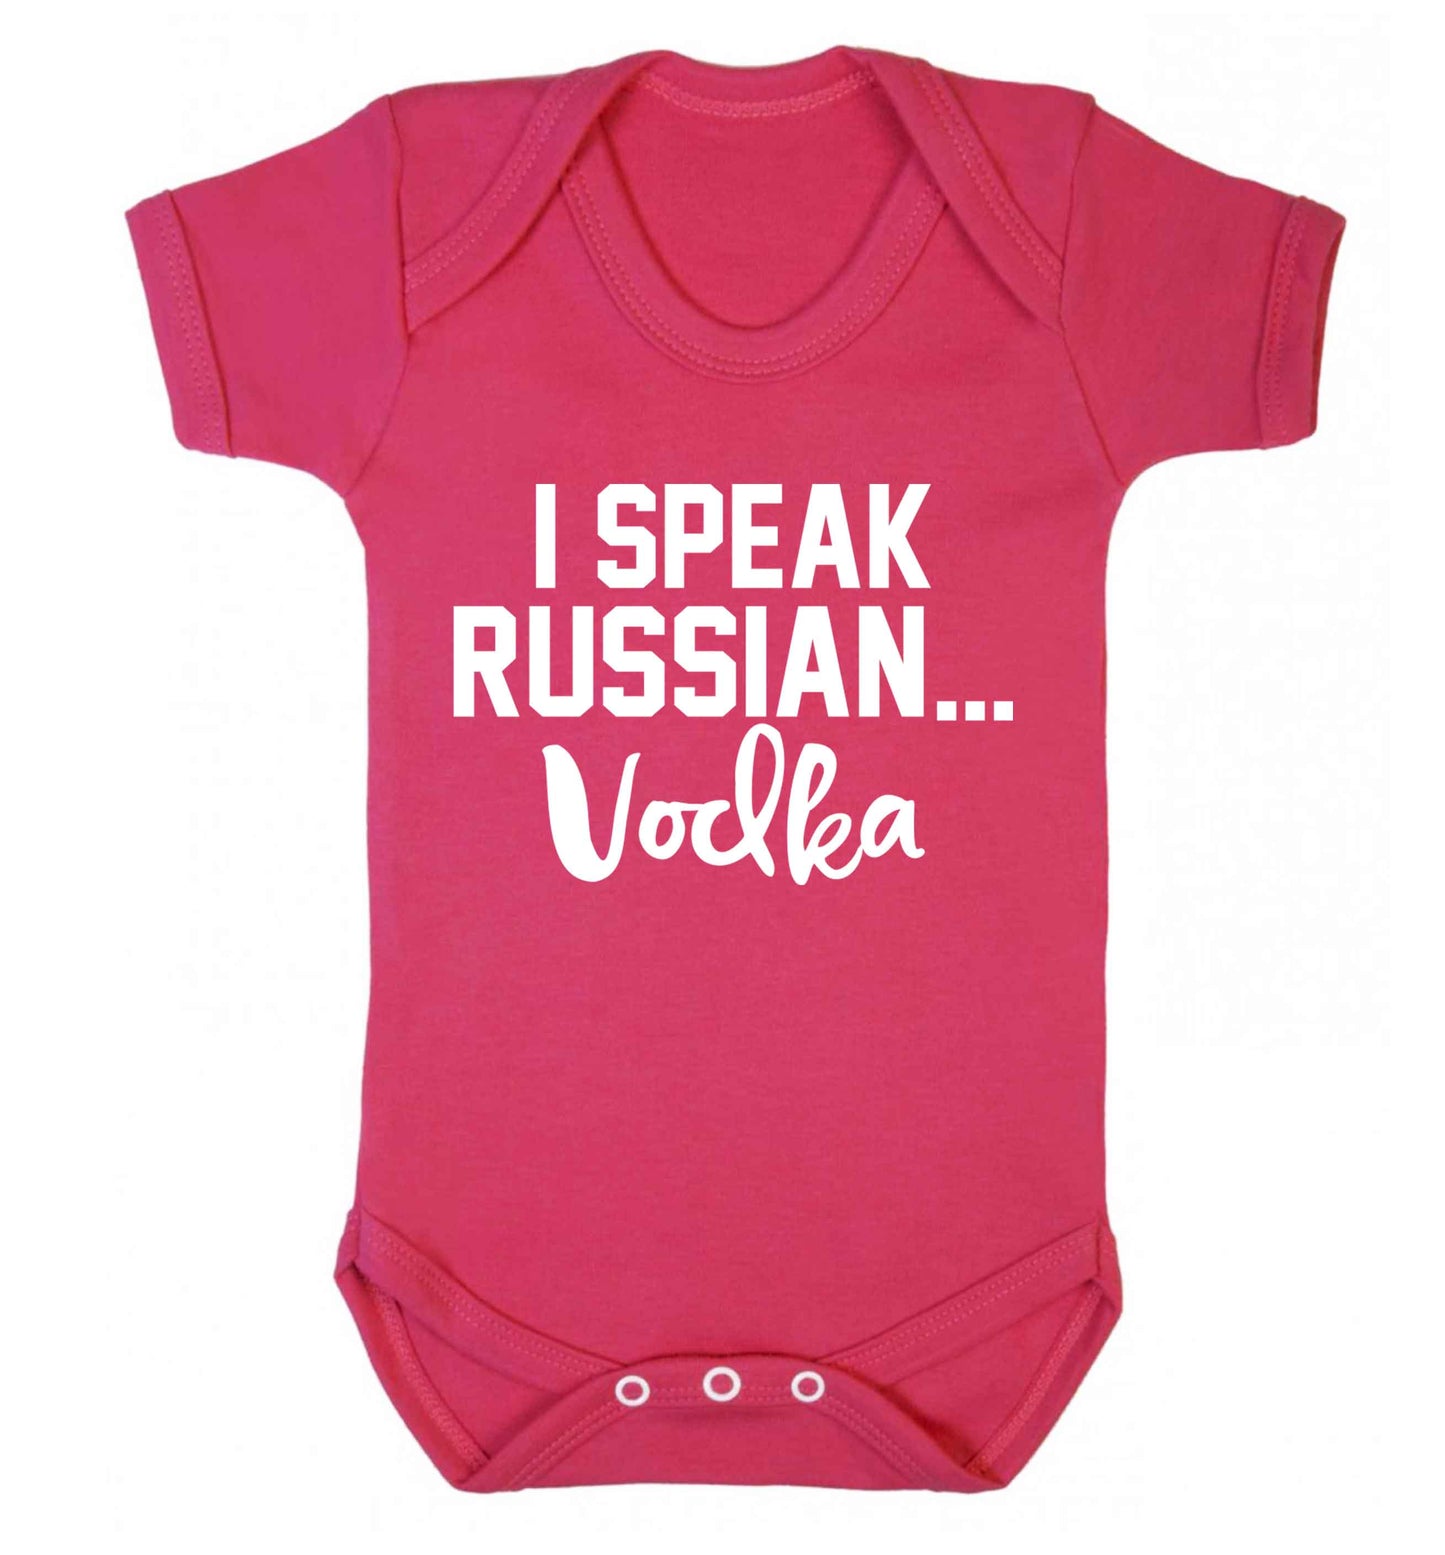 I speak russian...vodka Baby Vest dark pink 18-24 months